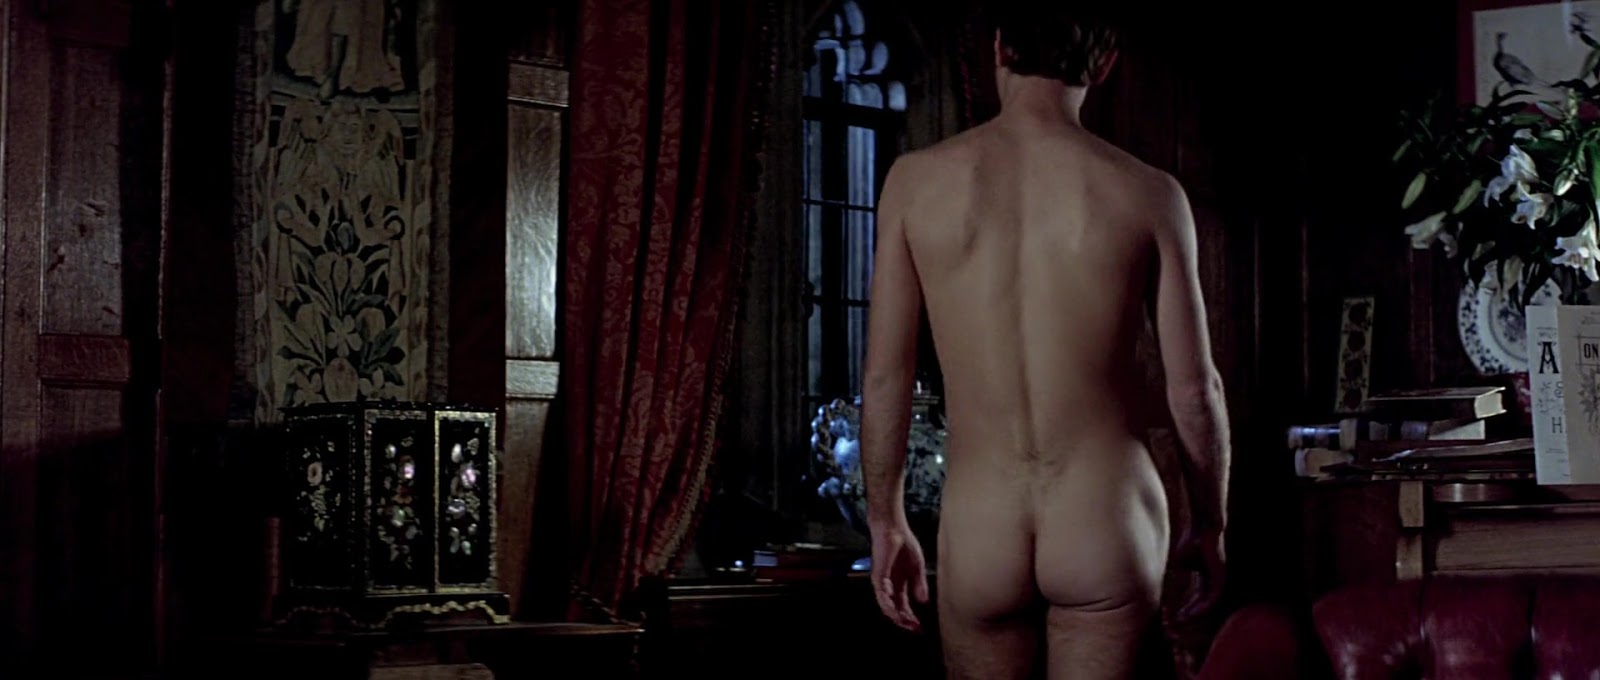 Jude Law nude in Wilde.